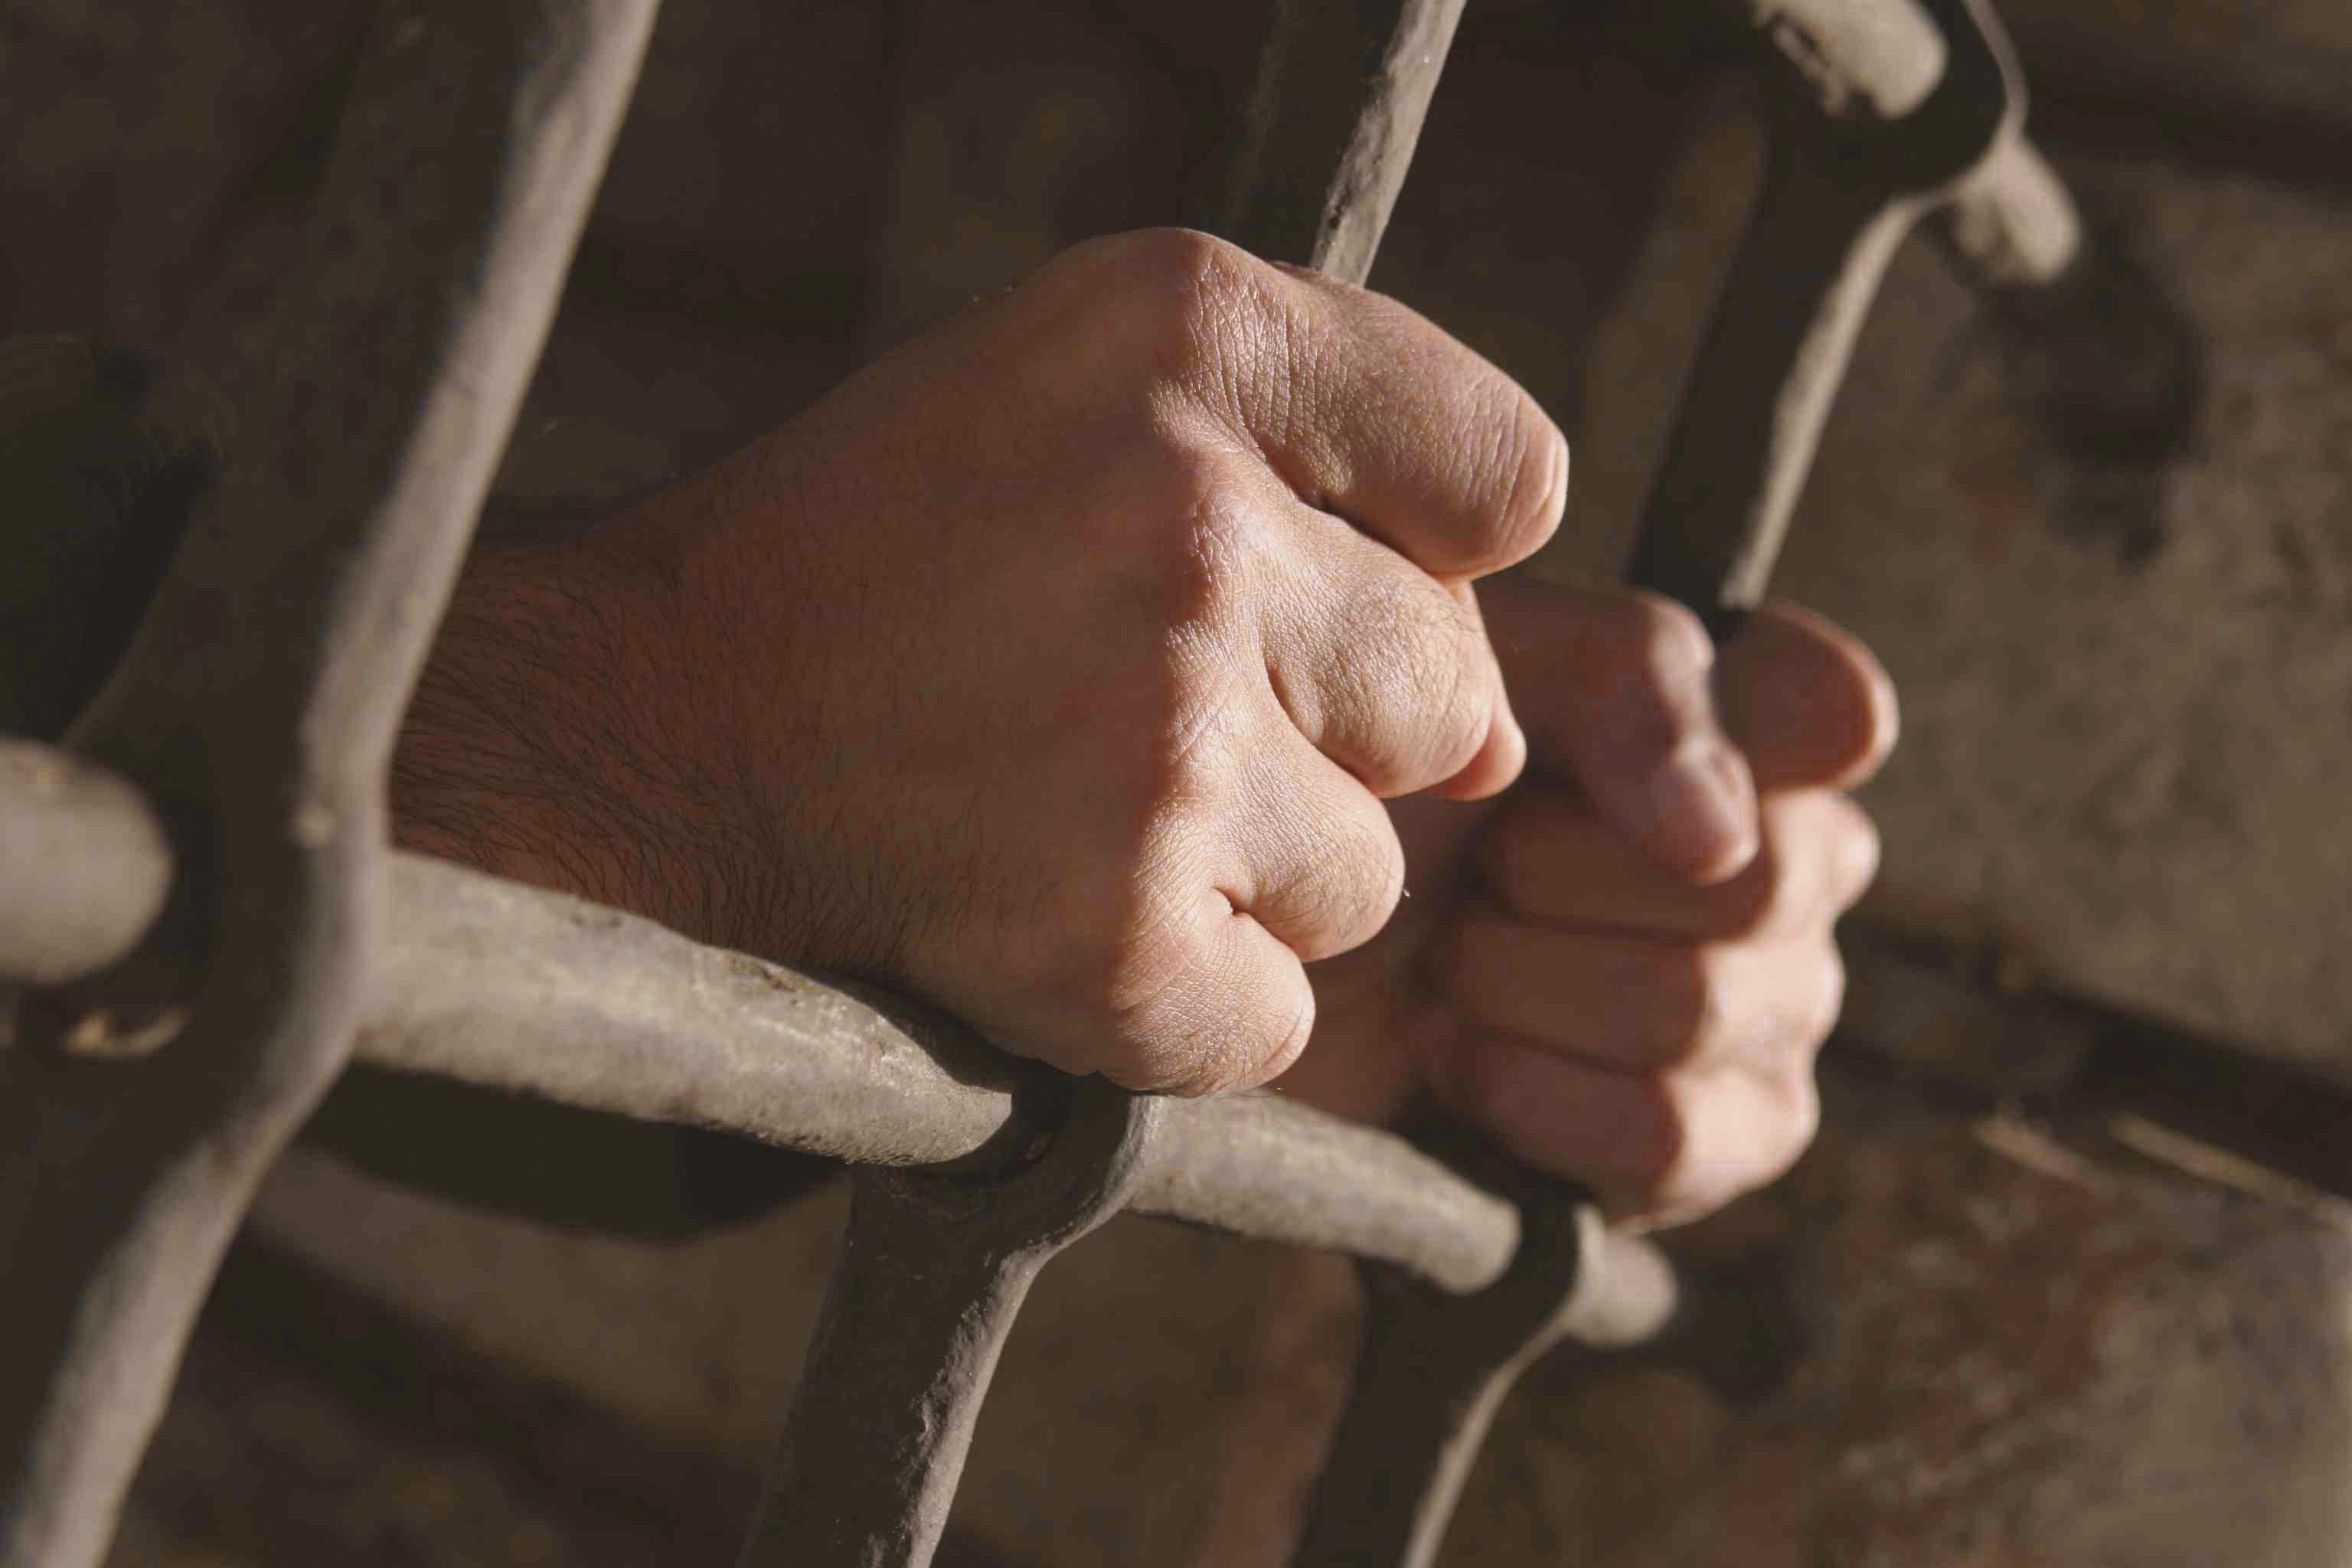 تدهور صحة المعتقلين في سجن طرة بسبب الإهمال الطبي والتعذيب